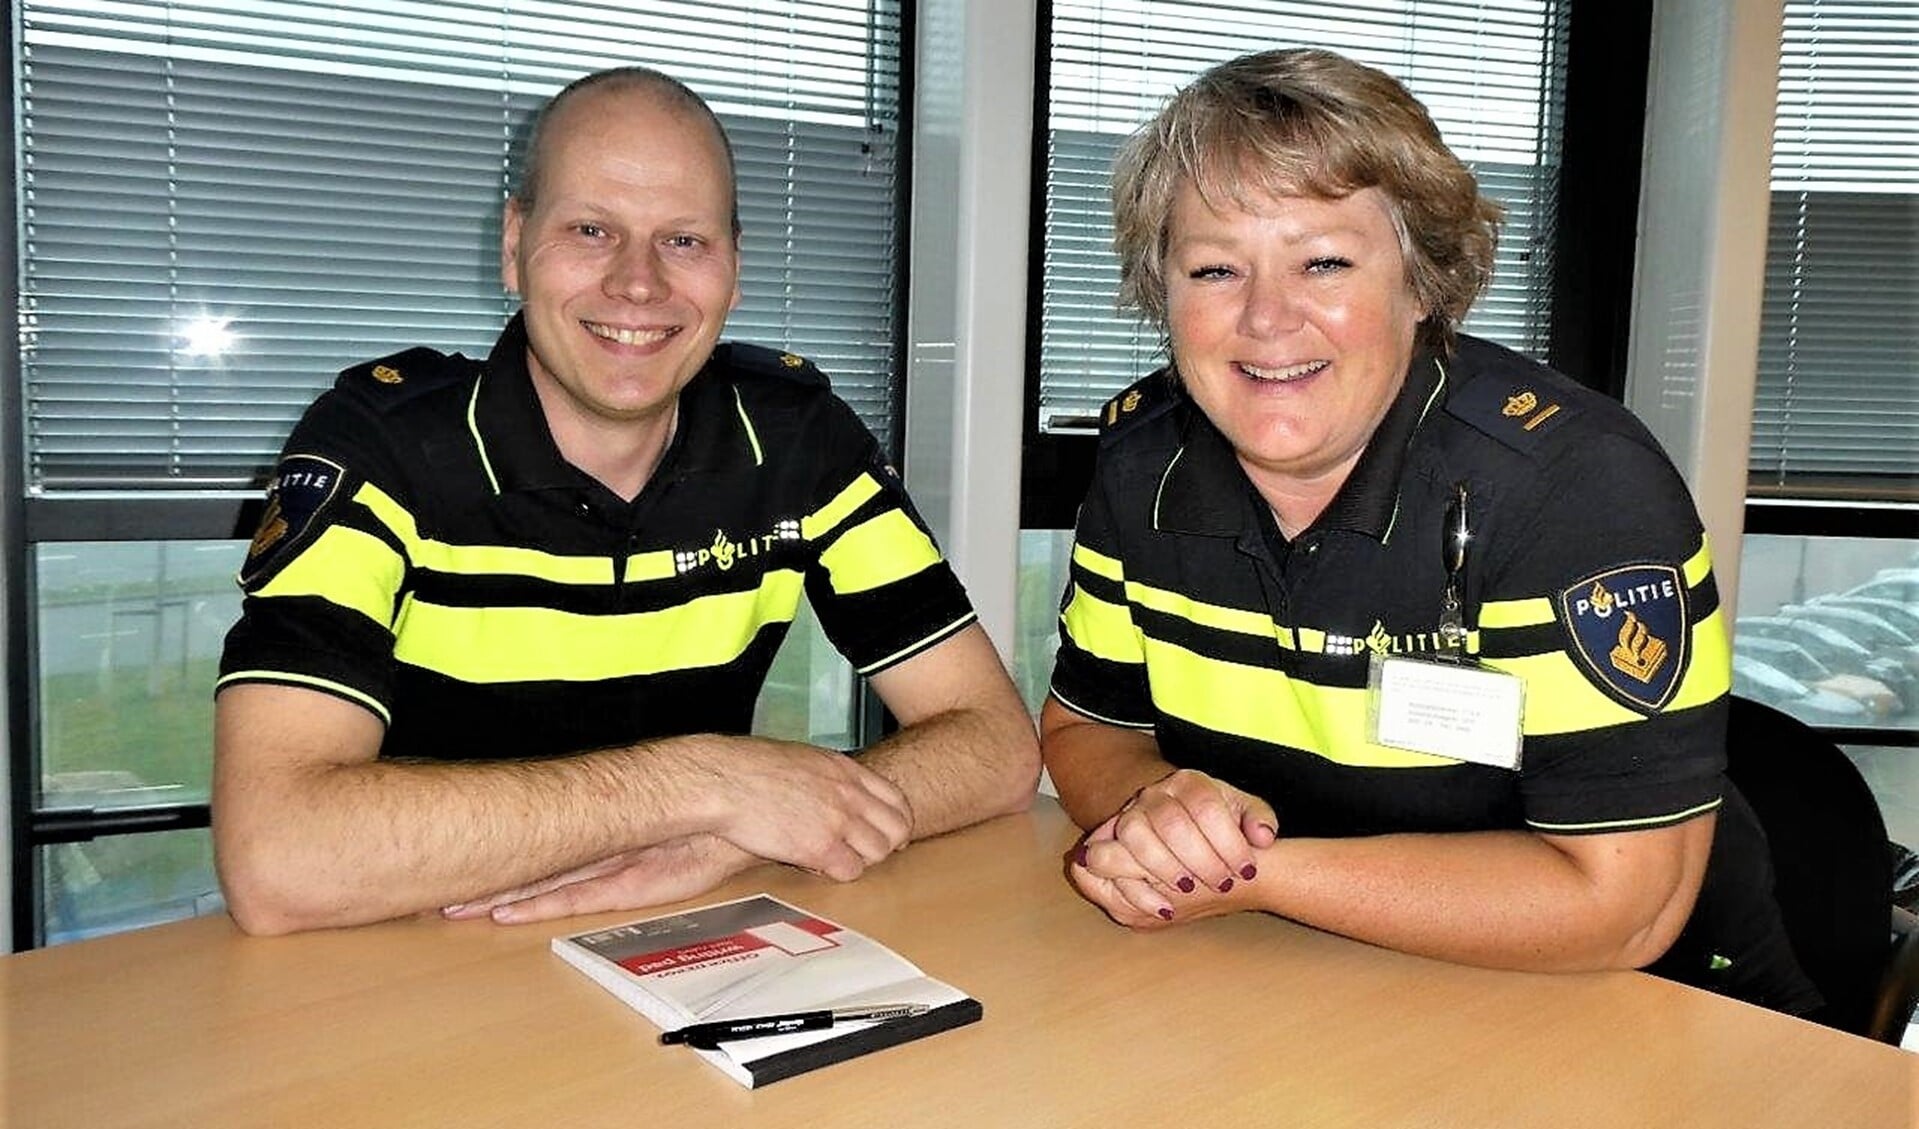 Teamchef Anouk Radloff en Operationeel specialist Dennis D. van der Sluis tijdens het bezoek aan het bureau (foto/tekst: Dick Muijs).